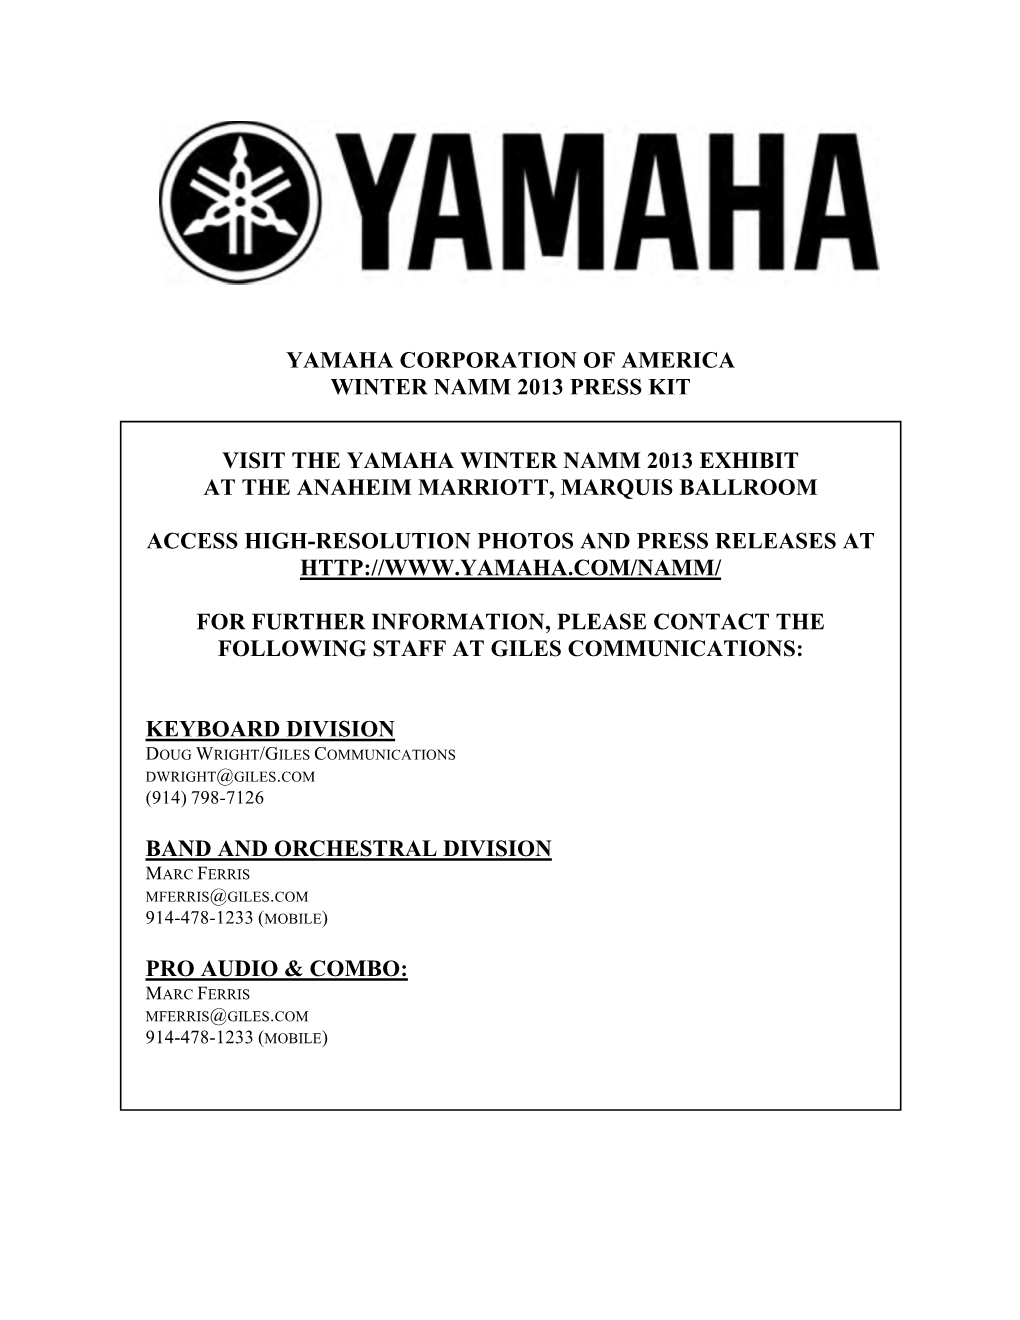 Yamaha Corporation of America Winter Namm 2013 Press Kit